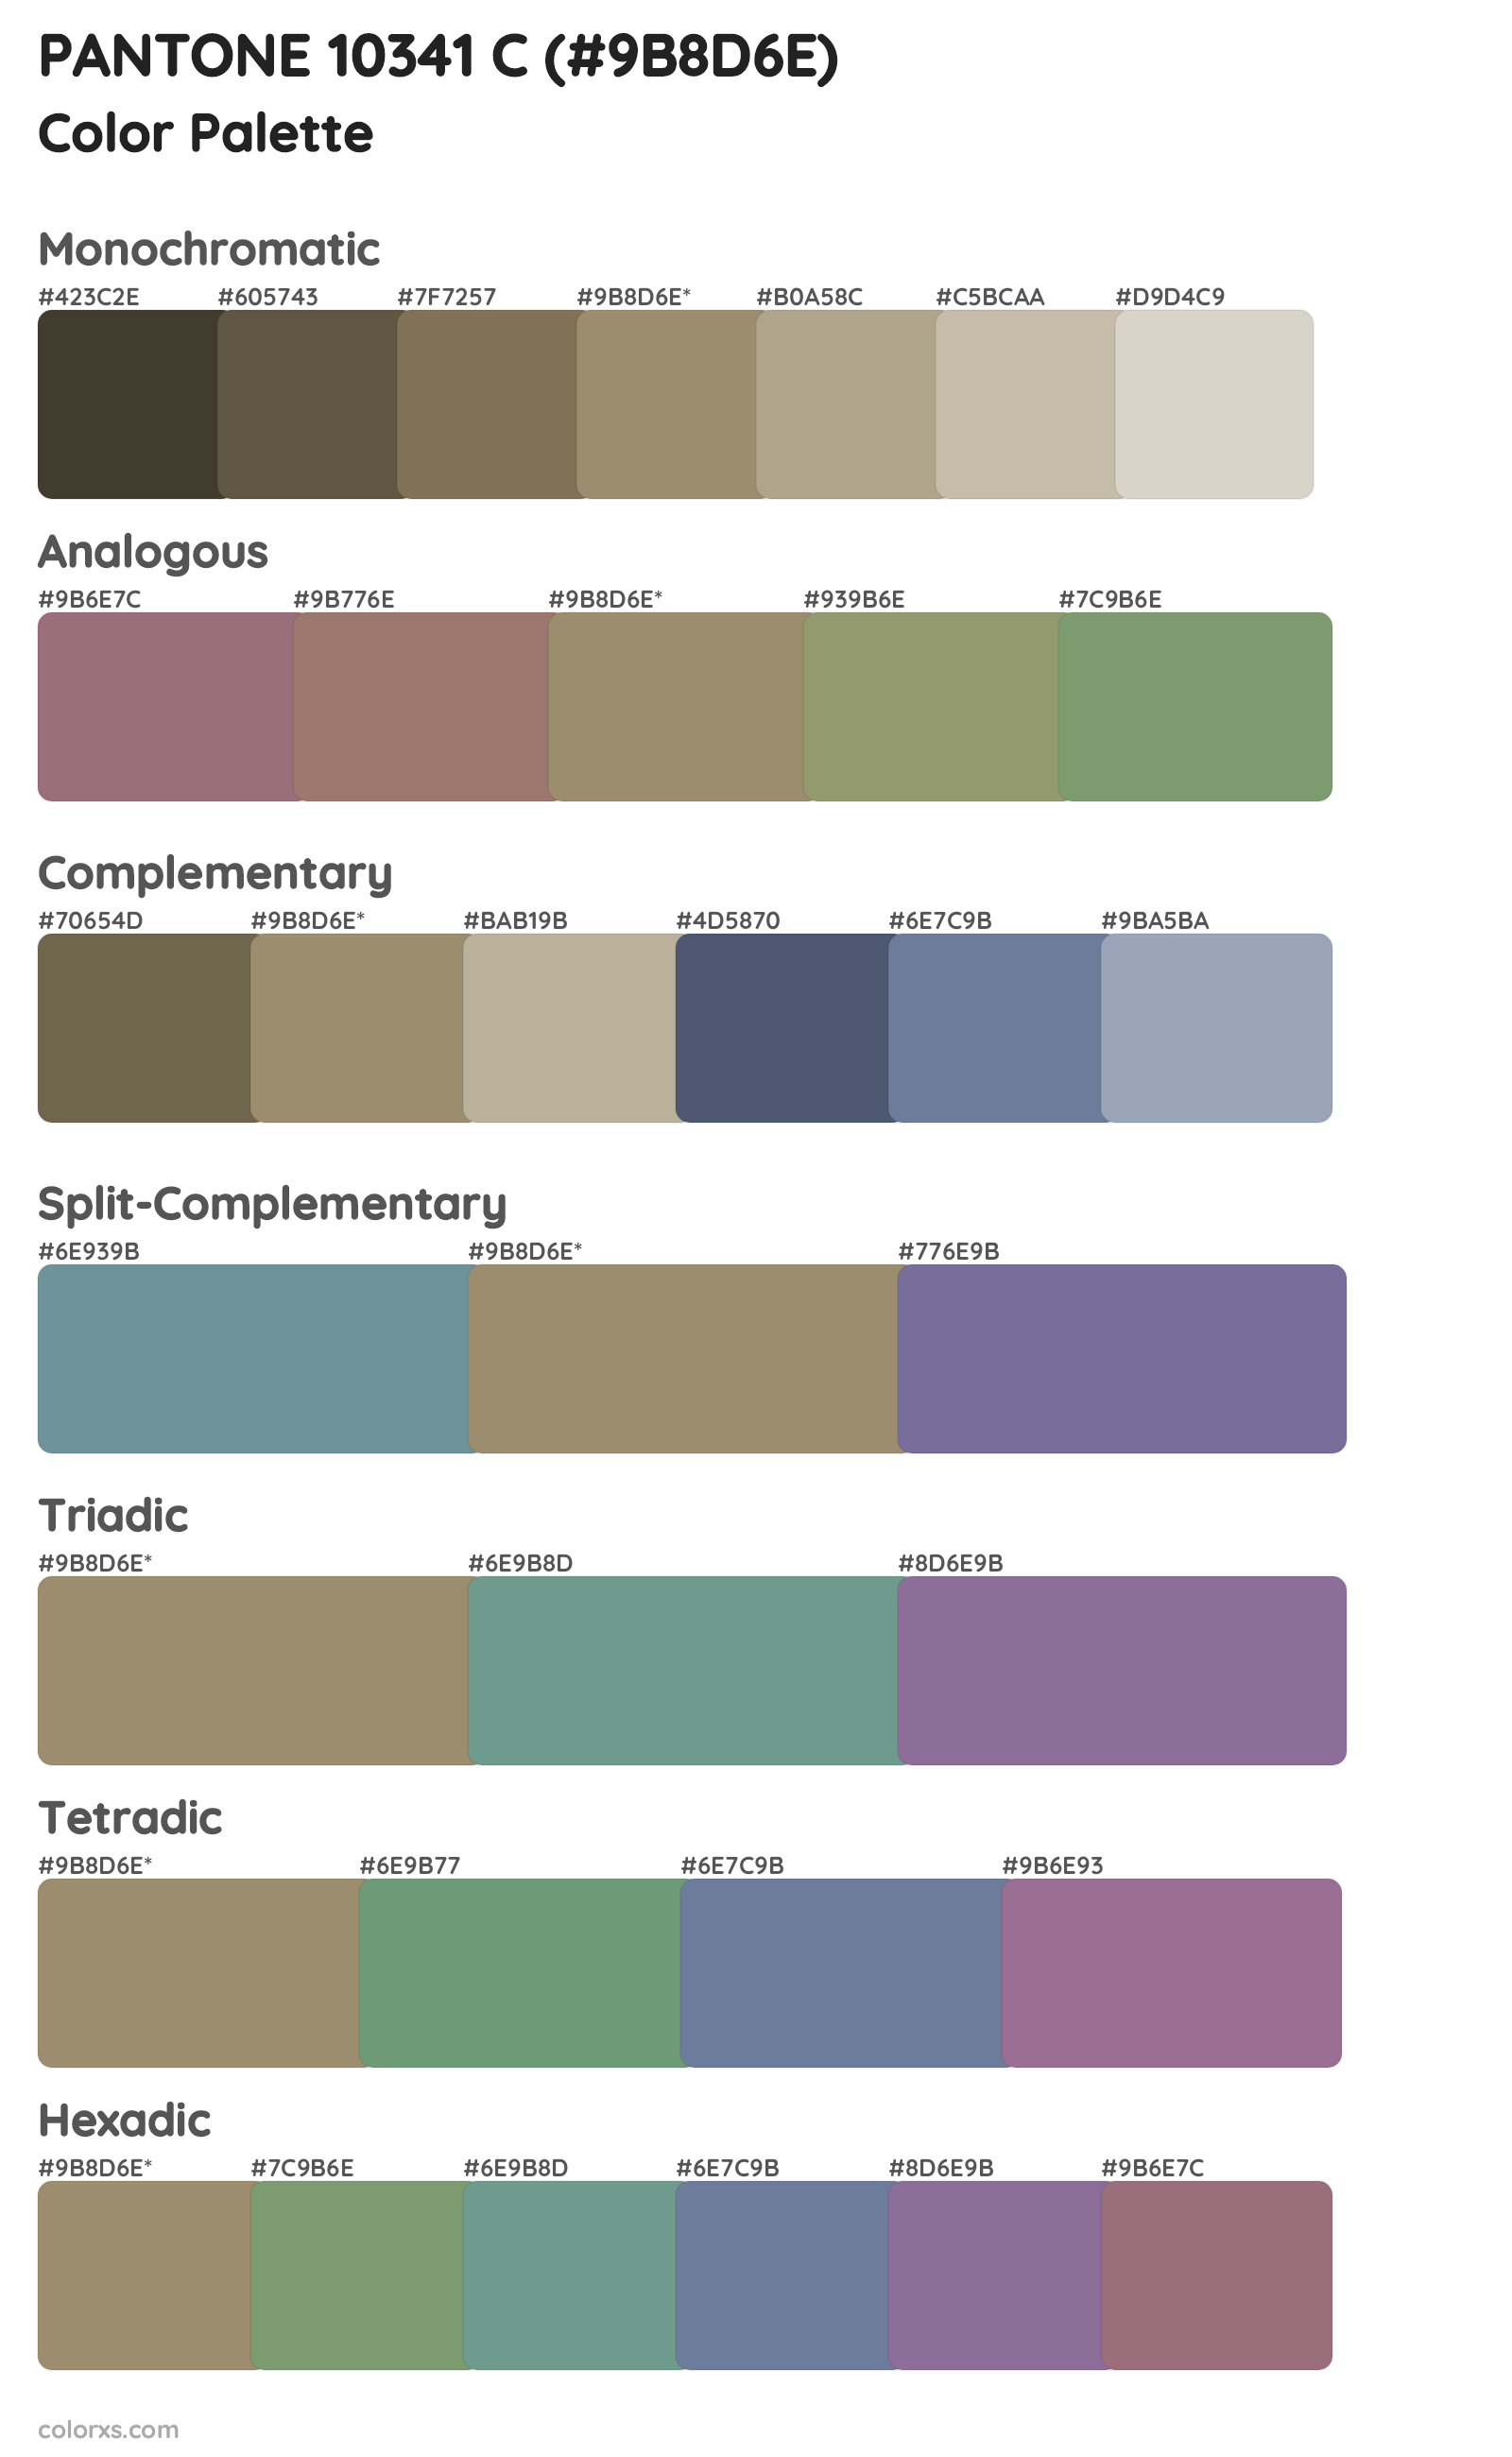 PANTONE 10341 C Color Scheme Palettes